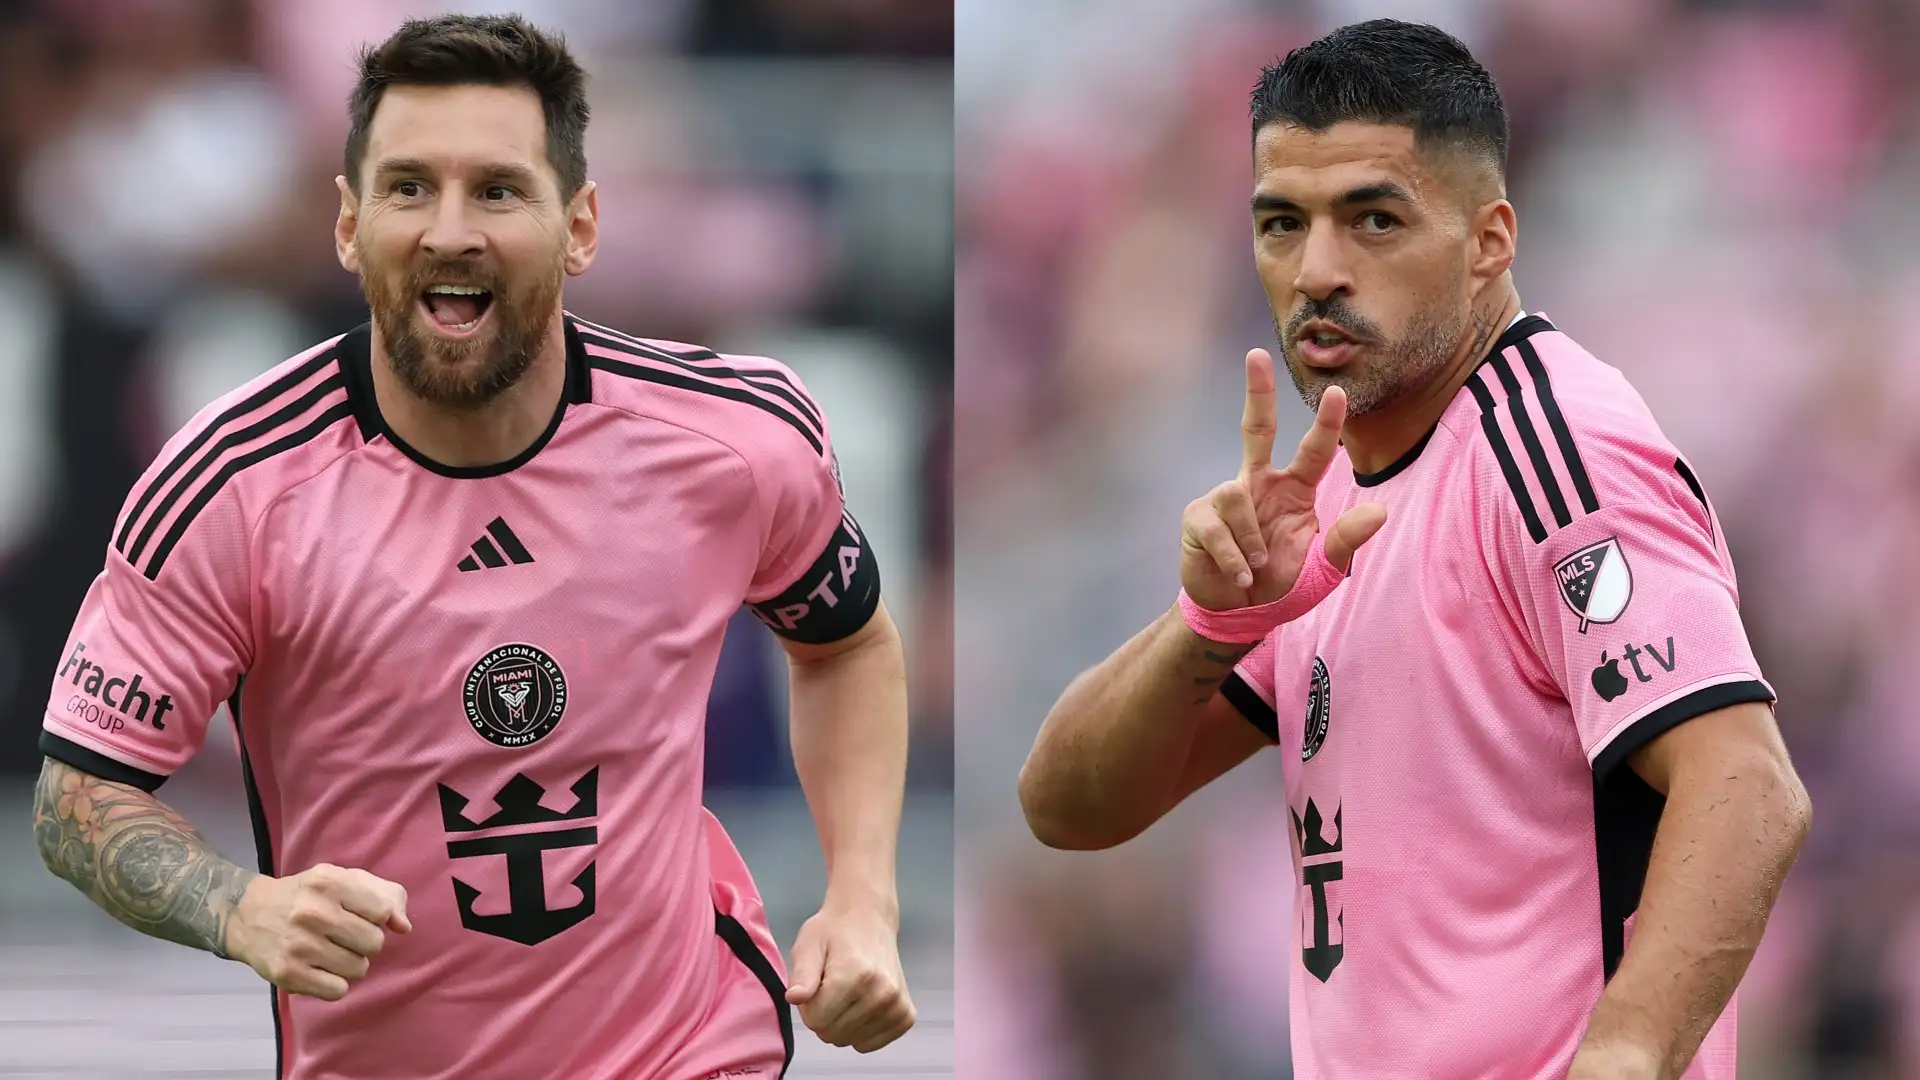 Lionel Messi & Luis Suarez to return for Inter Miami in MLS clash with Atlanta United as Tata Martino confirms pre-Copa America plan for star duo